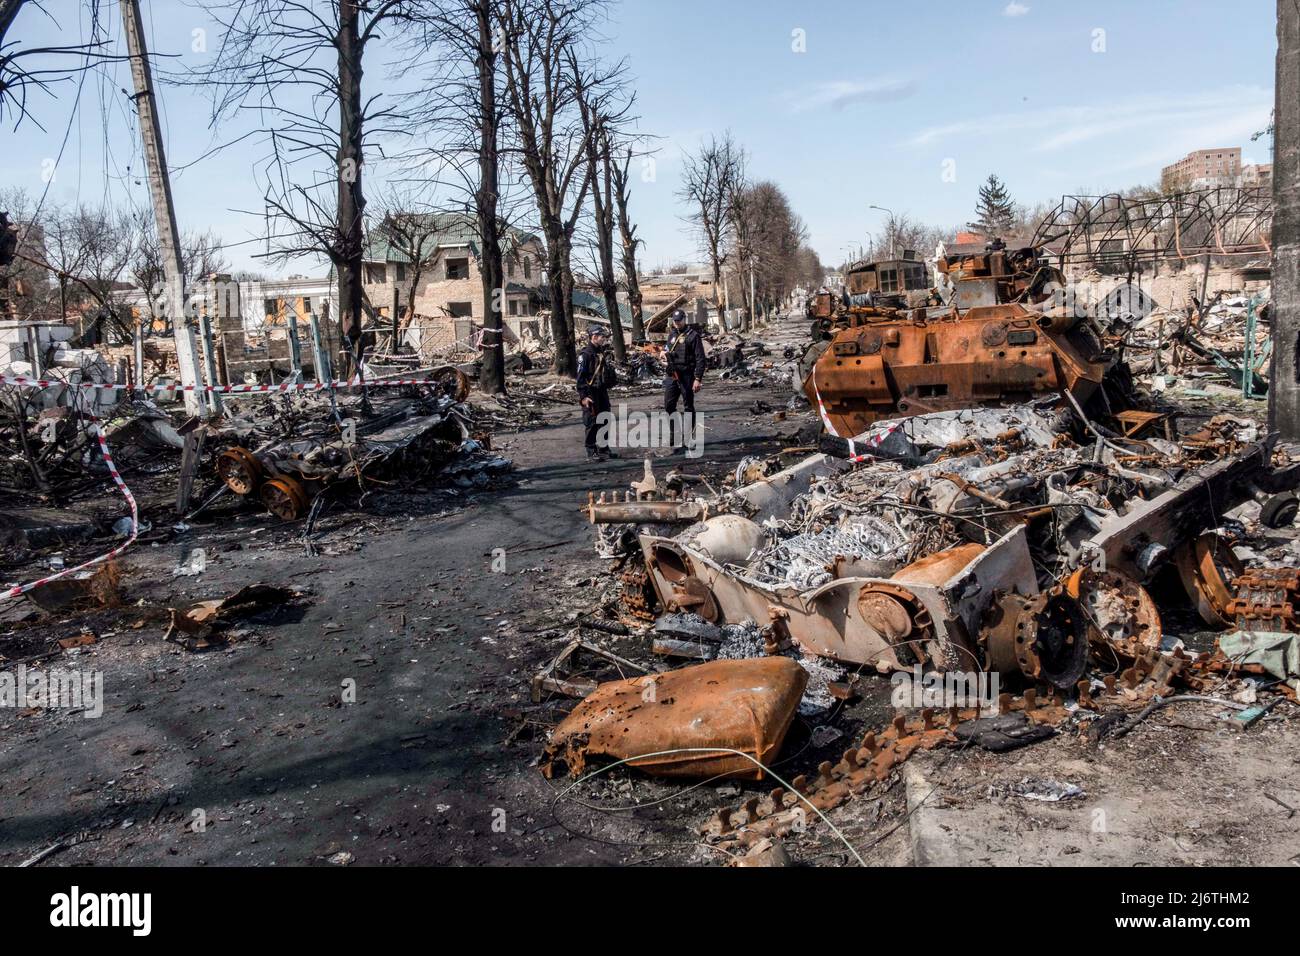 Zwei Polizisten kommen in einer Straße in Bucha an zerstörten und verbrannten Panzern vorbei. Bucha, eine Stadt am Rande der ukrainischen Hauptstadt Kiew, wurde etwa einen Monat lang von russischen Soldaten kontrolliert. Ihre Befreiung am 31. März enthüllte einige der grausamsten Gräueltaten, die russische Soldaten während der Besatzung verübt hatten. Gebäude wurden zerstört und Häuser geplündert. In Bucha Straßen, Gebäuden und Massengräbern wurden Leichen gefunden. Stockfoto